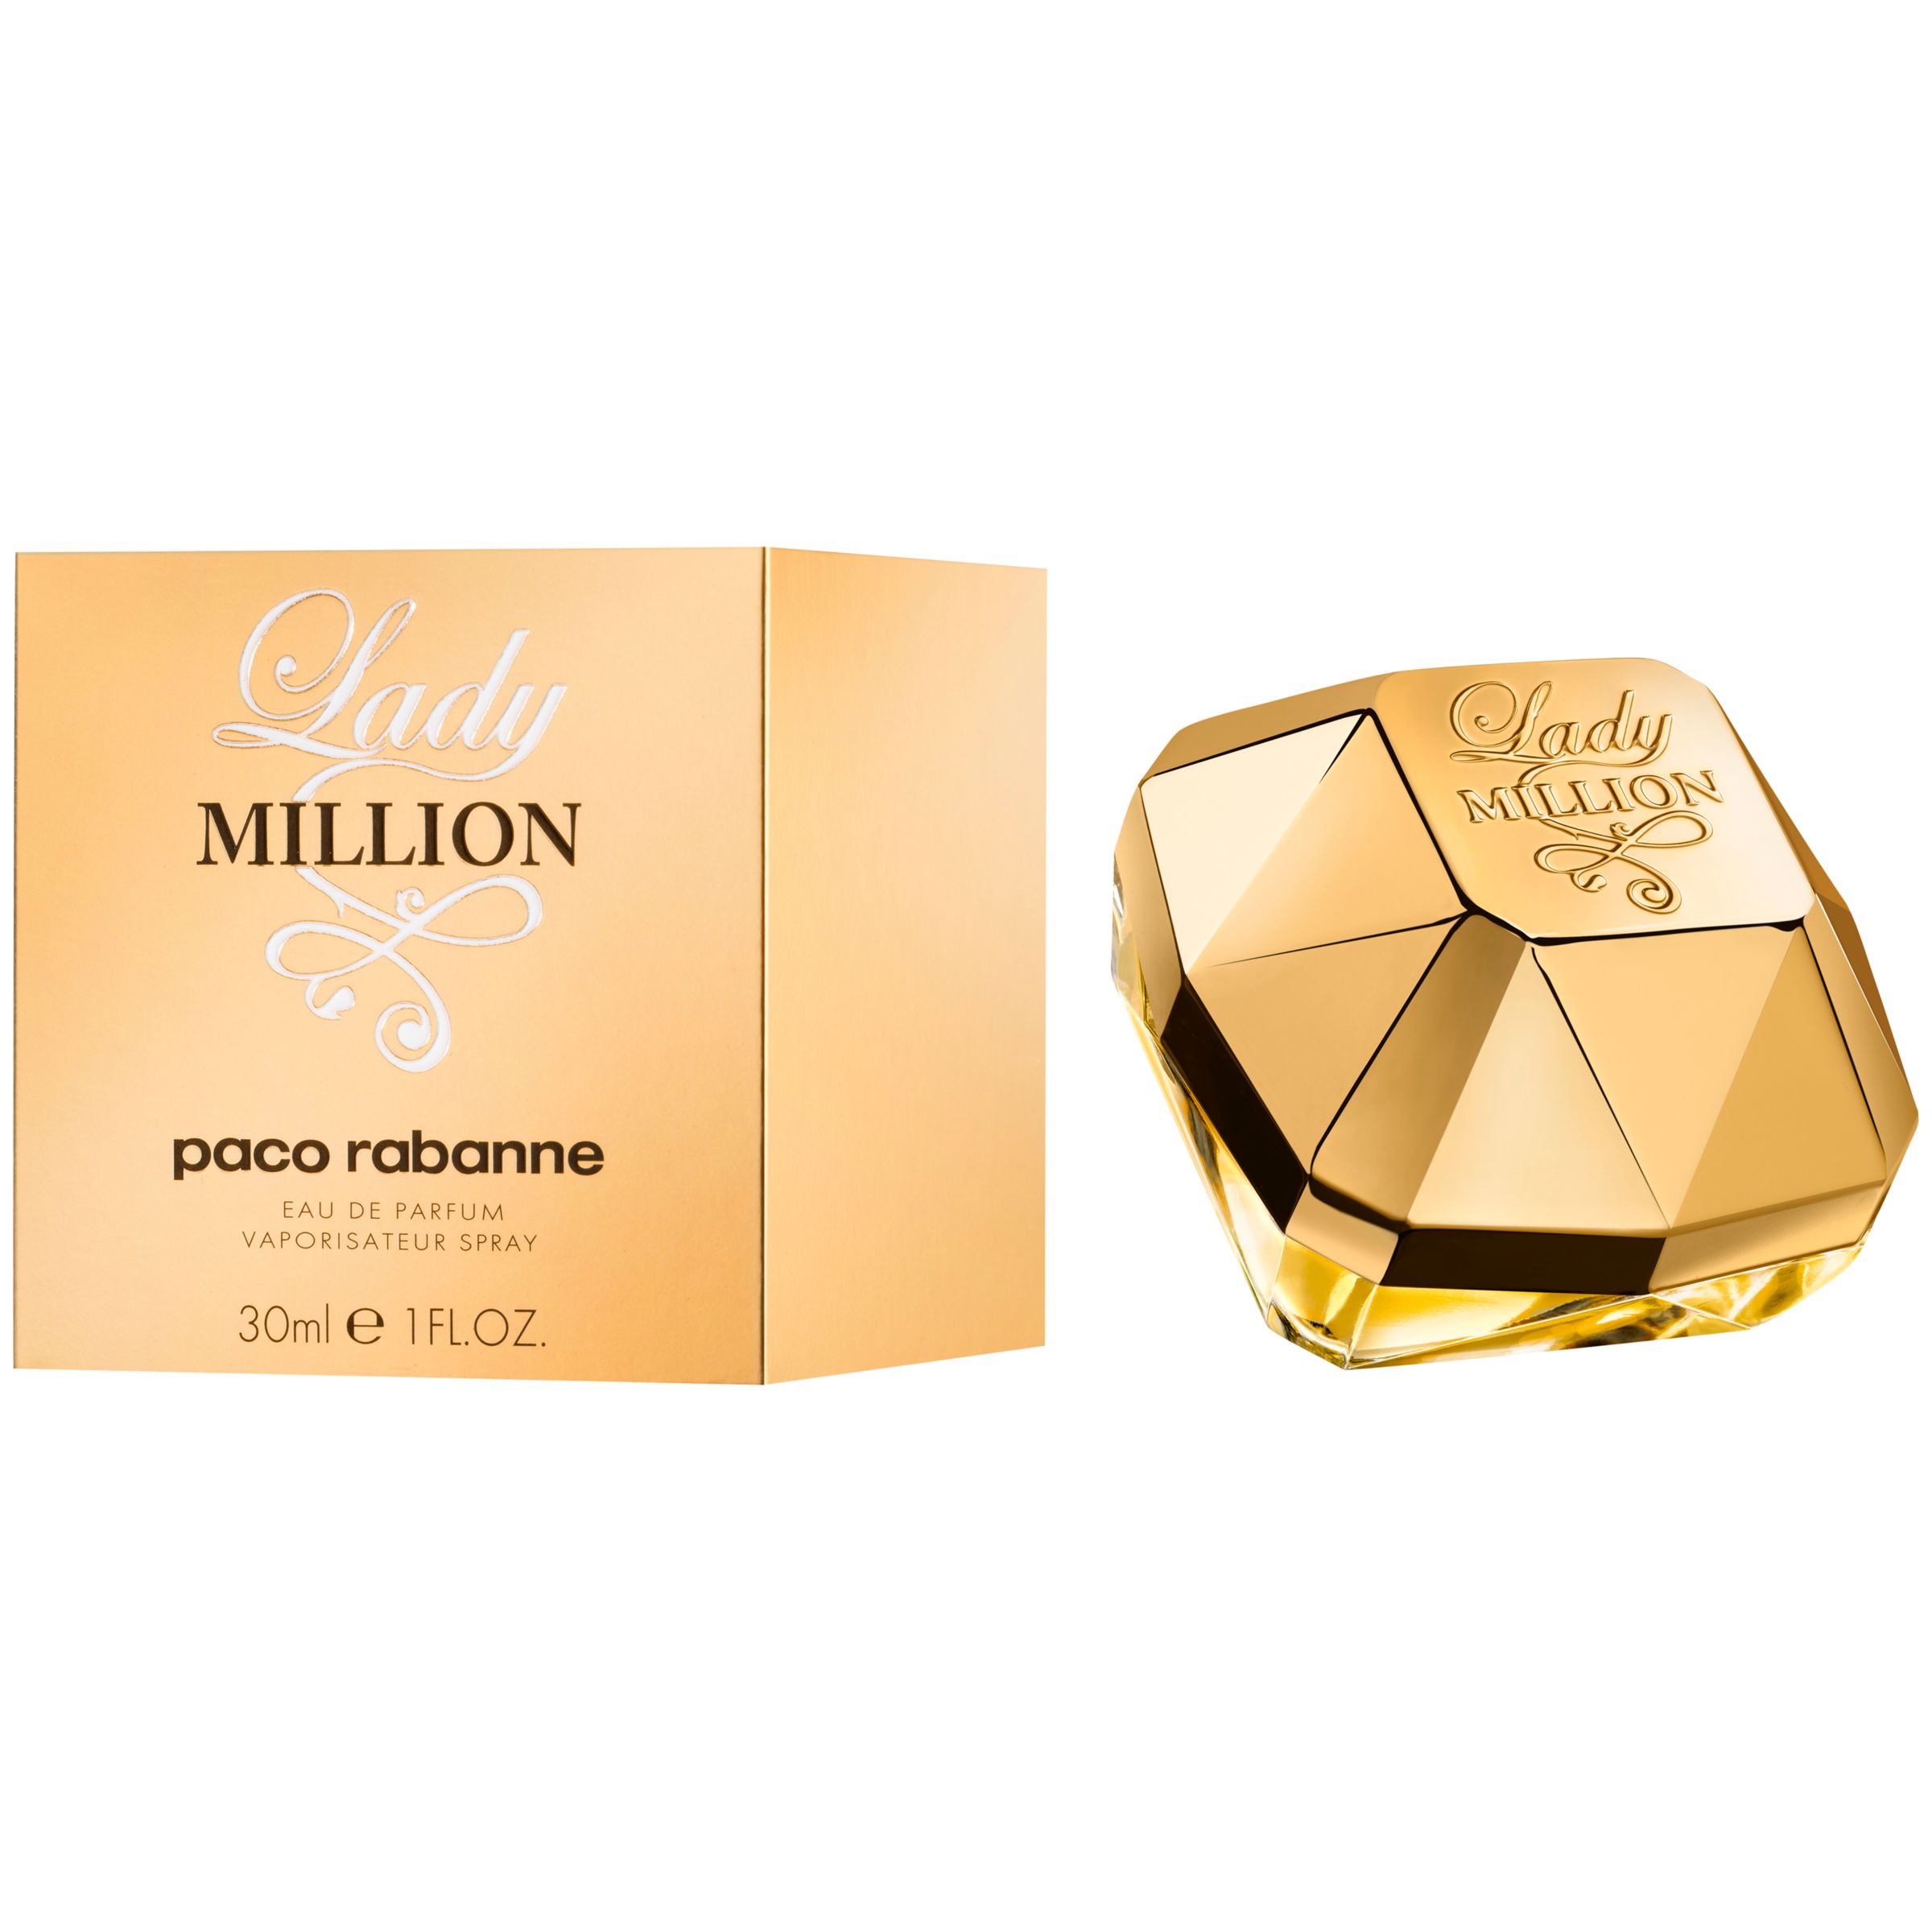 Paco Rabanne Lady Million Eau de Parfum, 30ml at John Lewis & Partners